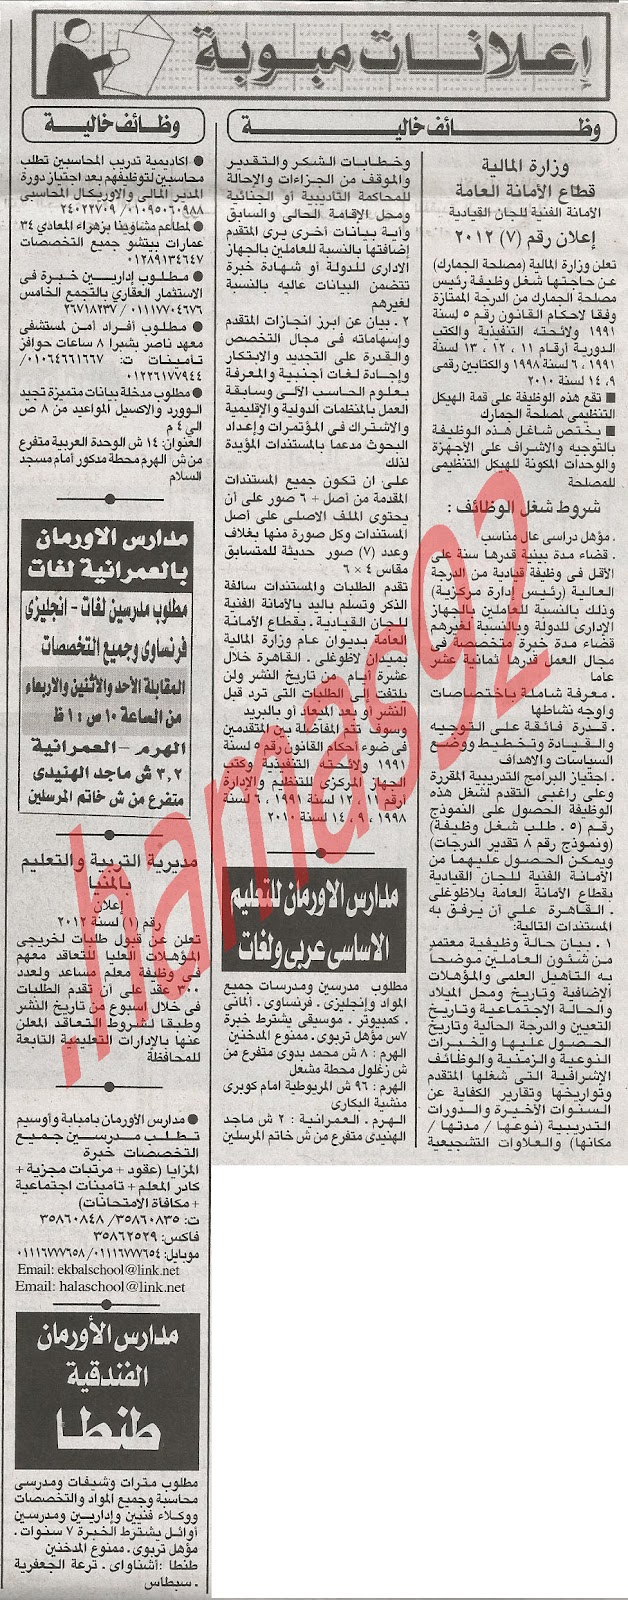 وظائف جريدة الاهرام الثلاثاء 10/7/2012 - وظائف مصر %D8%A7%D9%84%D8%A7%D9%87%D8%B1%D8%A7%D9%85+1